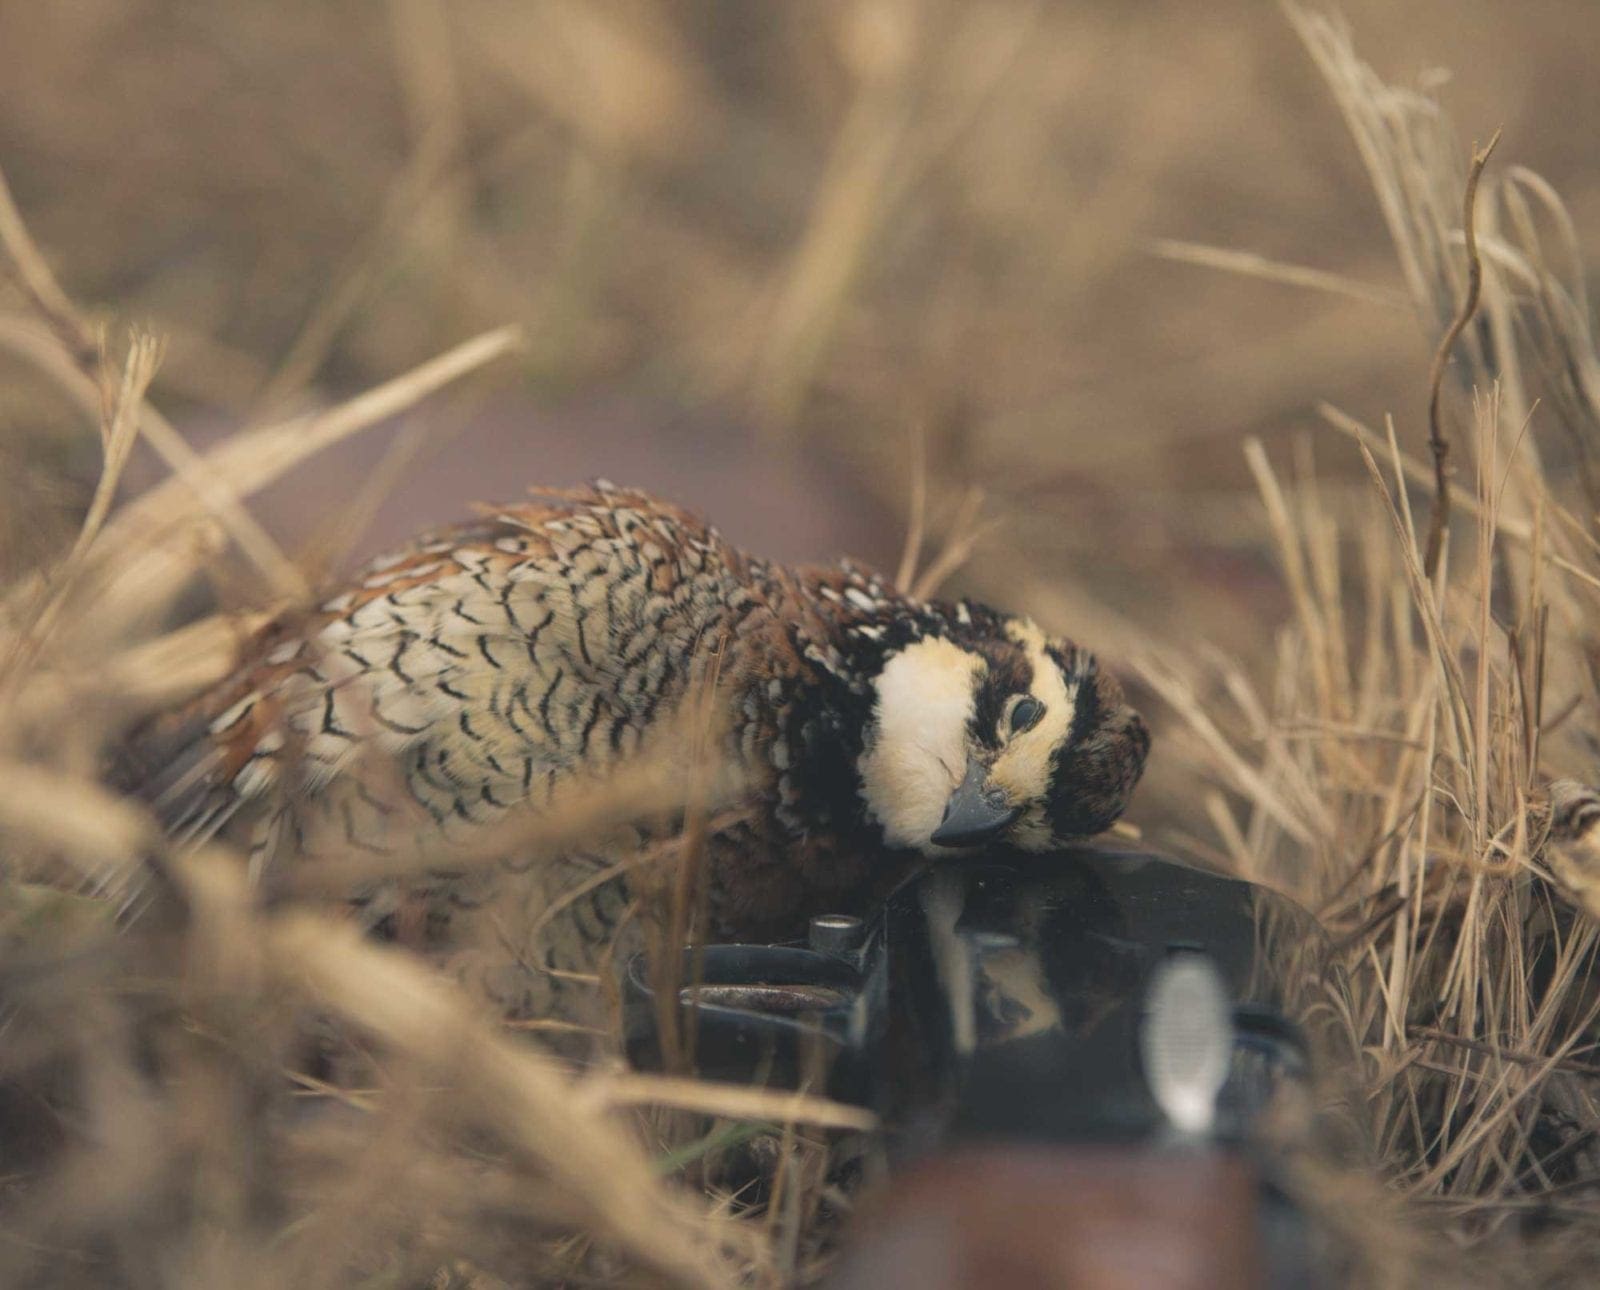 A bobwhite quail taken on public lands.